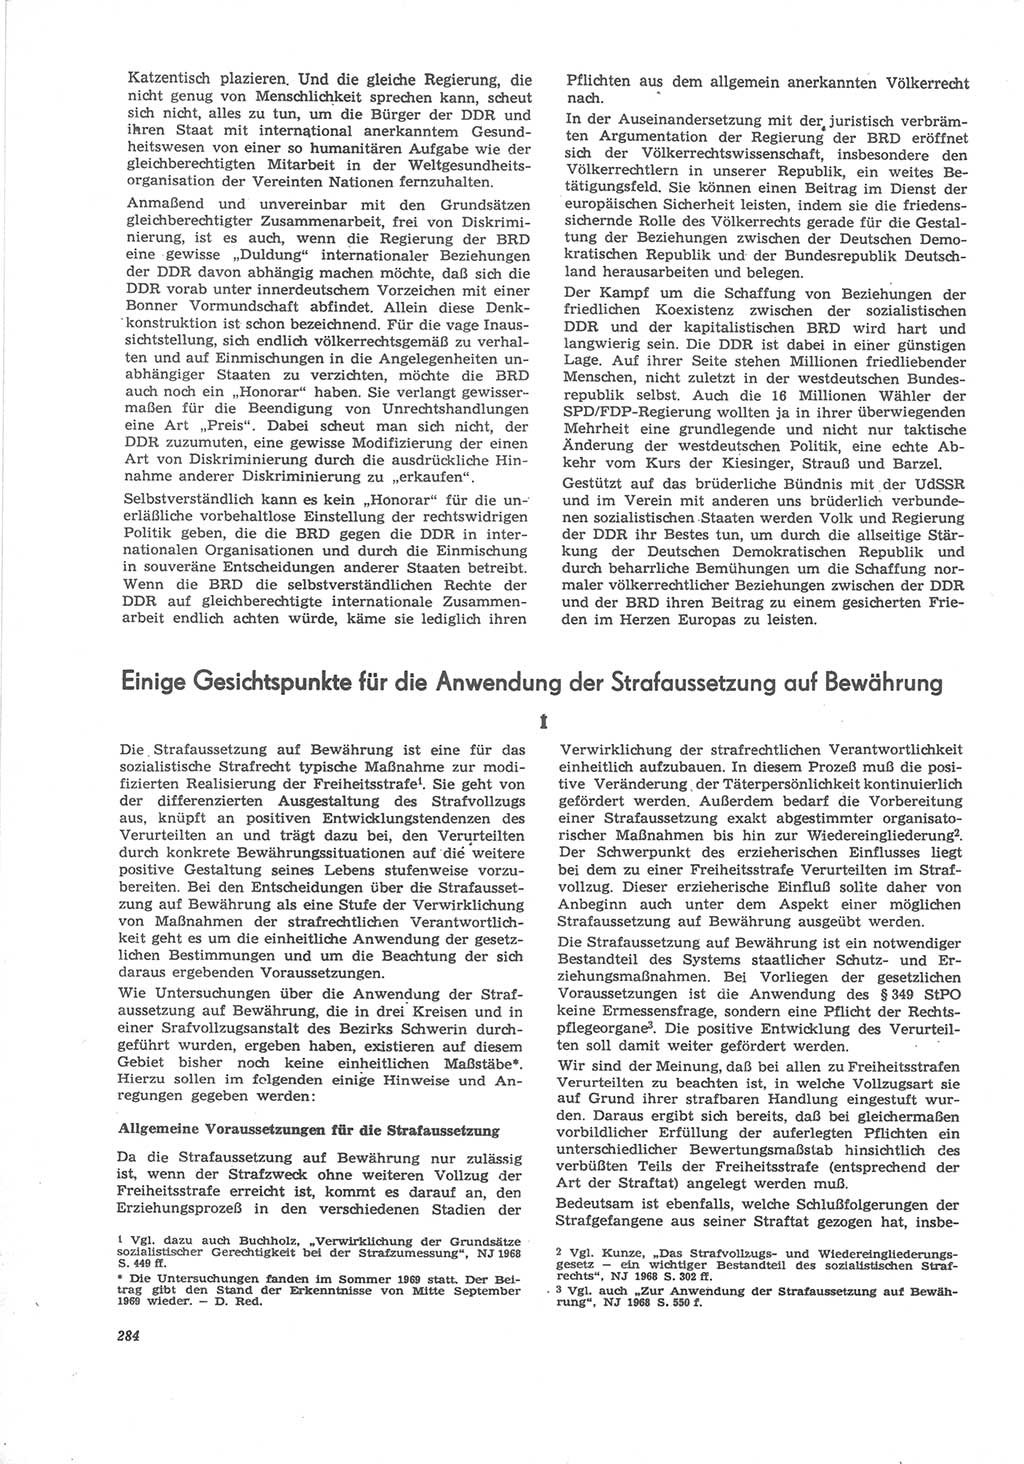 Neue Justiz (NJ), Zeitschrift für Recht und Rechtswissenschaft [Deutsche Demokratische Republik (DDR)], 24. Jahrgang 1970, Seite 284 (NJ DDR 1970, S. 284)